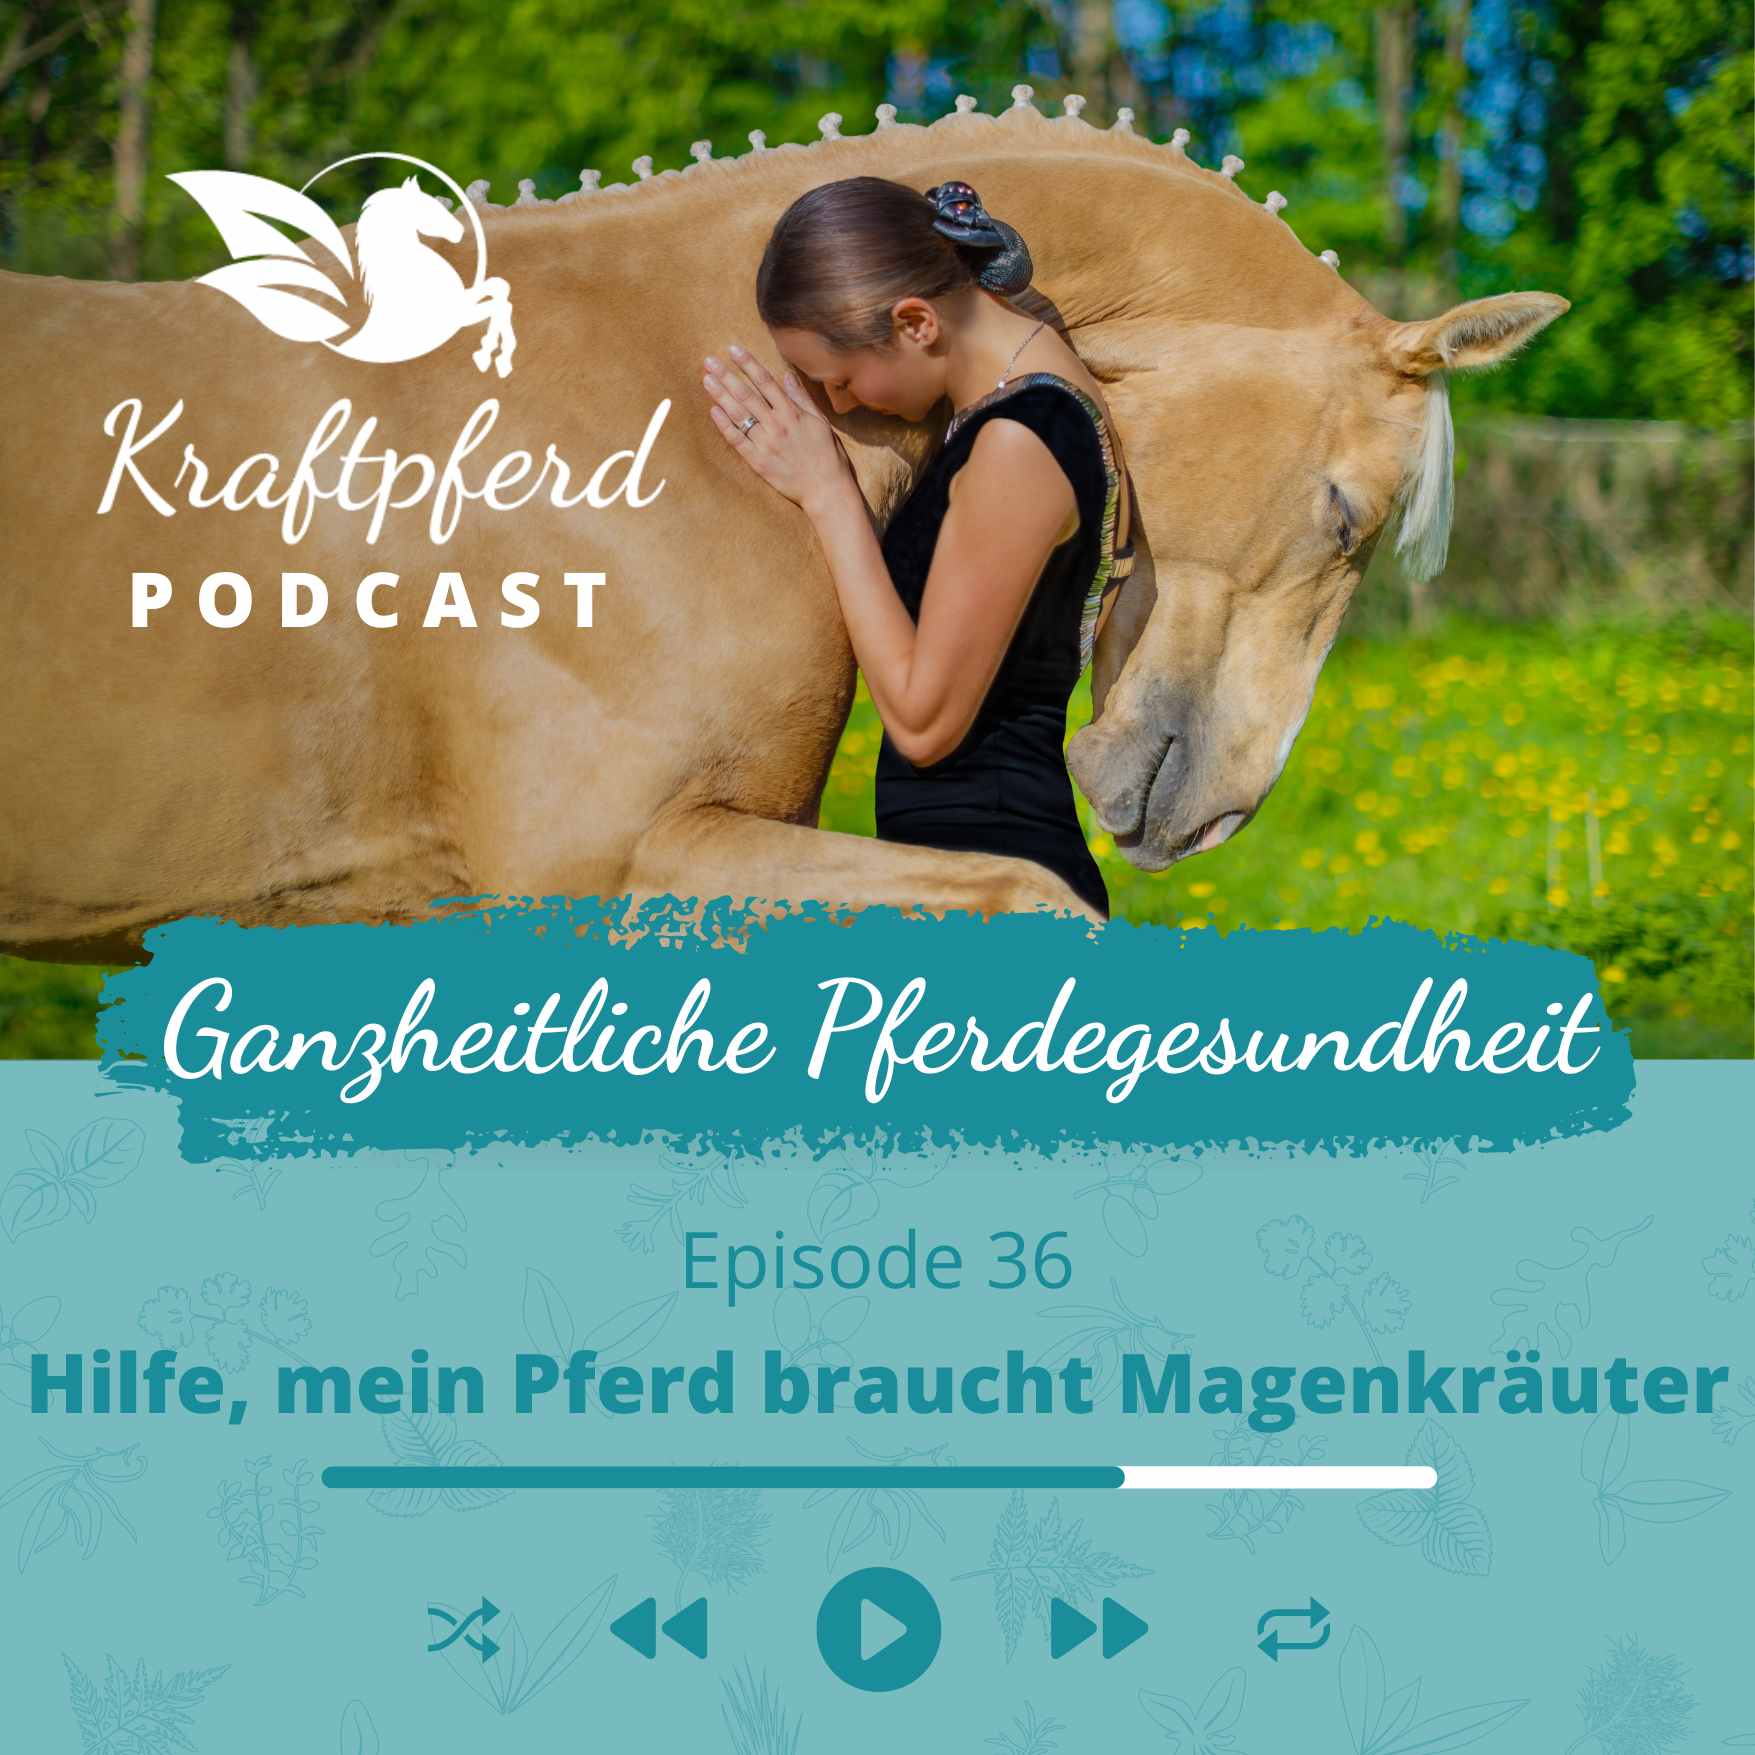 Kraftpferd Podcast #36: Hilfe, mein Pferd braucht Magenkräuter